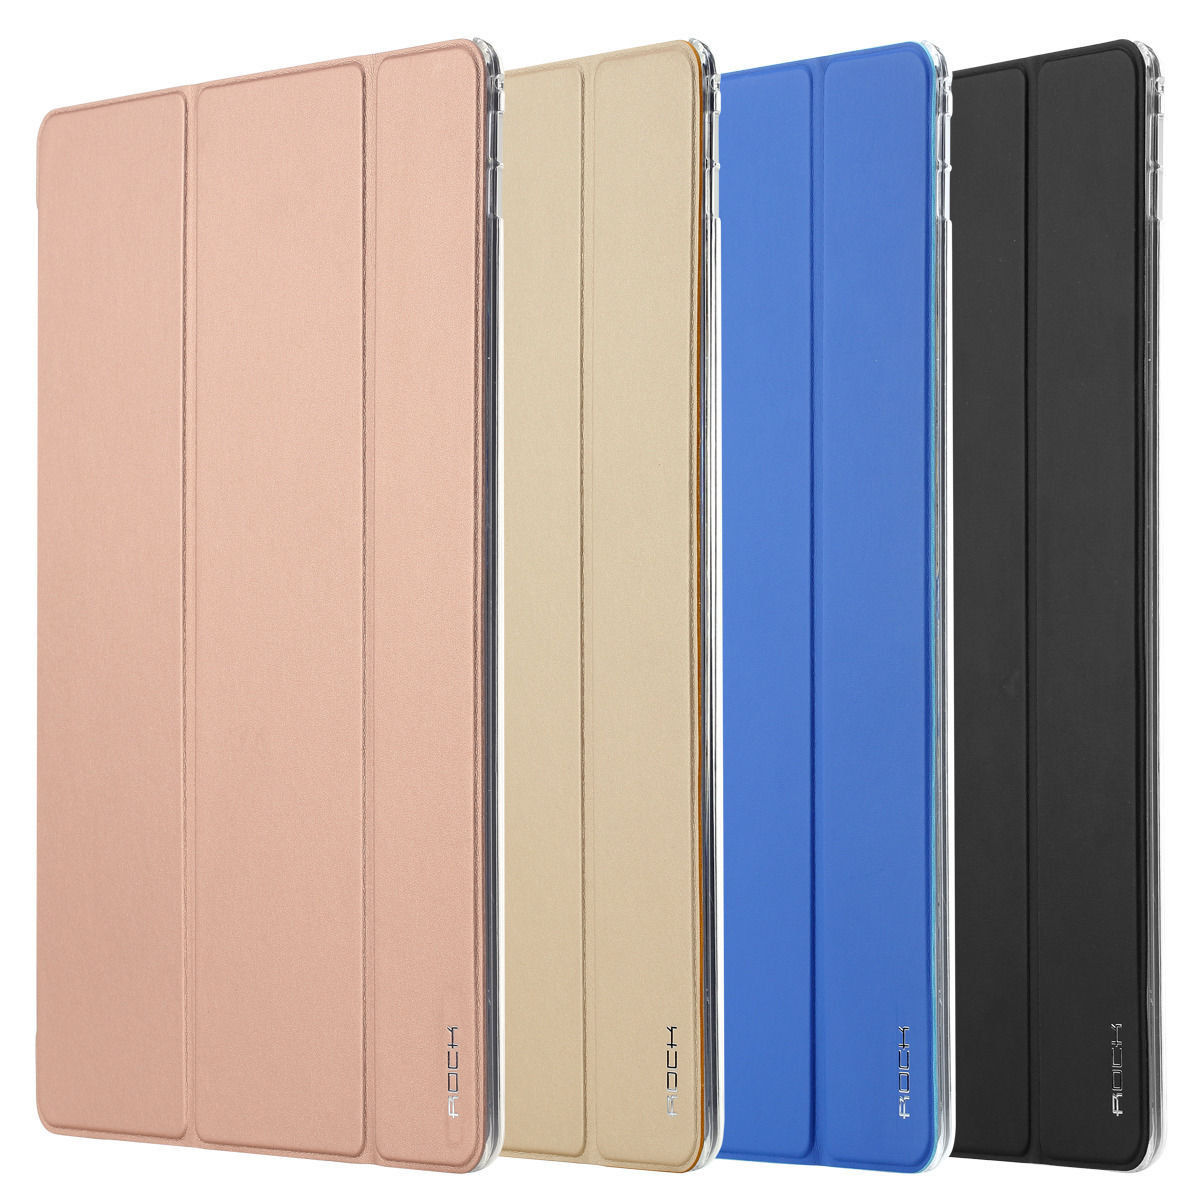 Bao da iPad Air 3 Rock Uni Series là thương hiệu mới nhất của hãng ROCK với thiết kế hoàn toàn mới dành riêng cho chiếc iPad Air 3, Bao da iPad Air 3 Rock Uni Series với chất liệu da nhám có độ bền cao, dễ dàng lau chùi